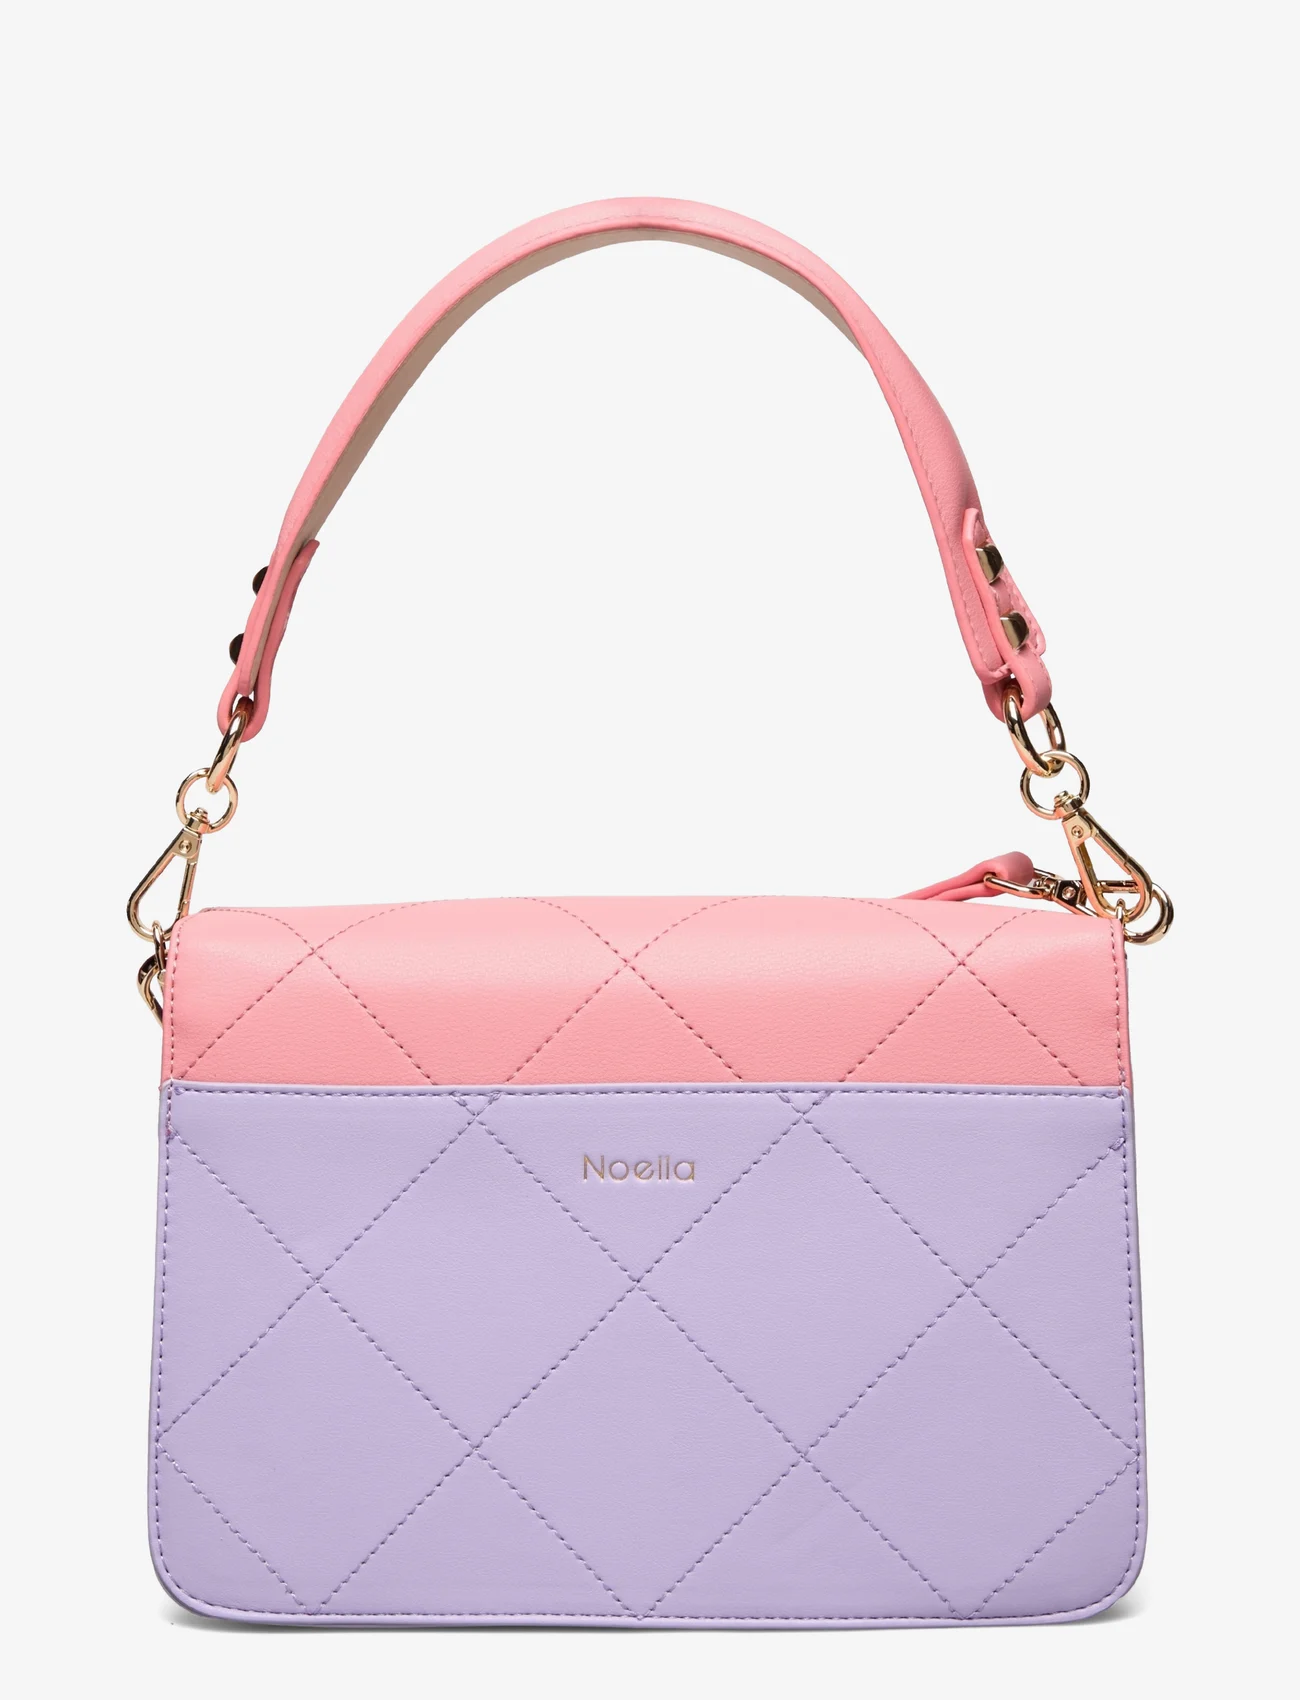 Noella - Blanca Multi Compartment Bag - vakarėlių drabužiai išparduotuvių kainomis - coral/purple/nude - 1